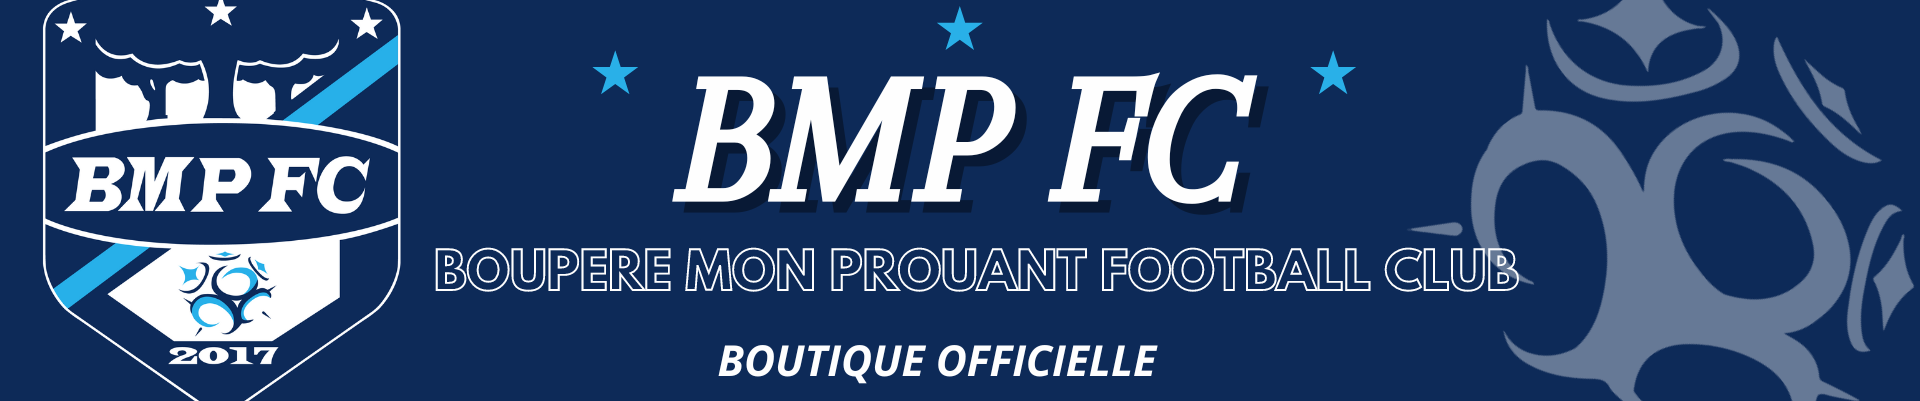 BOUTIQUE EN LIGNE - BMP FC - ESPACE DES MARQUES